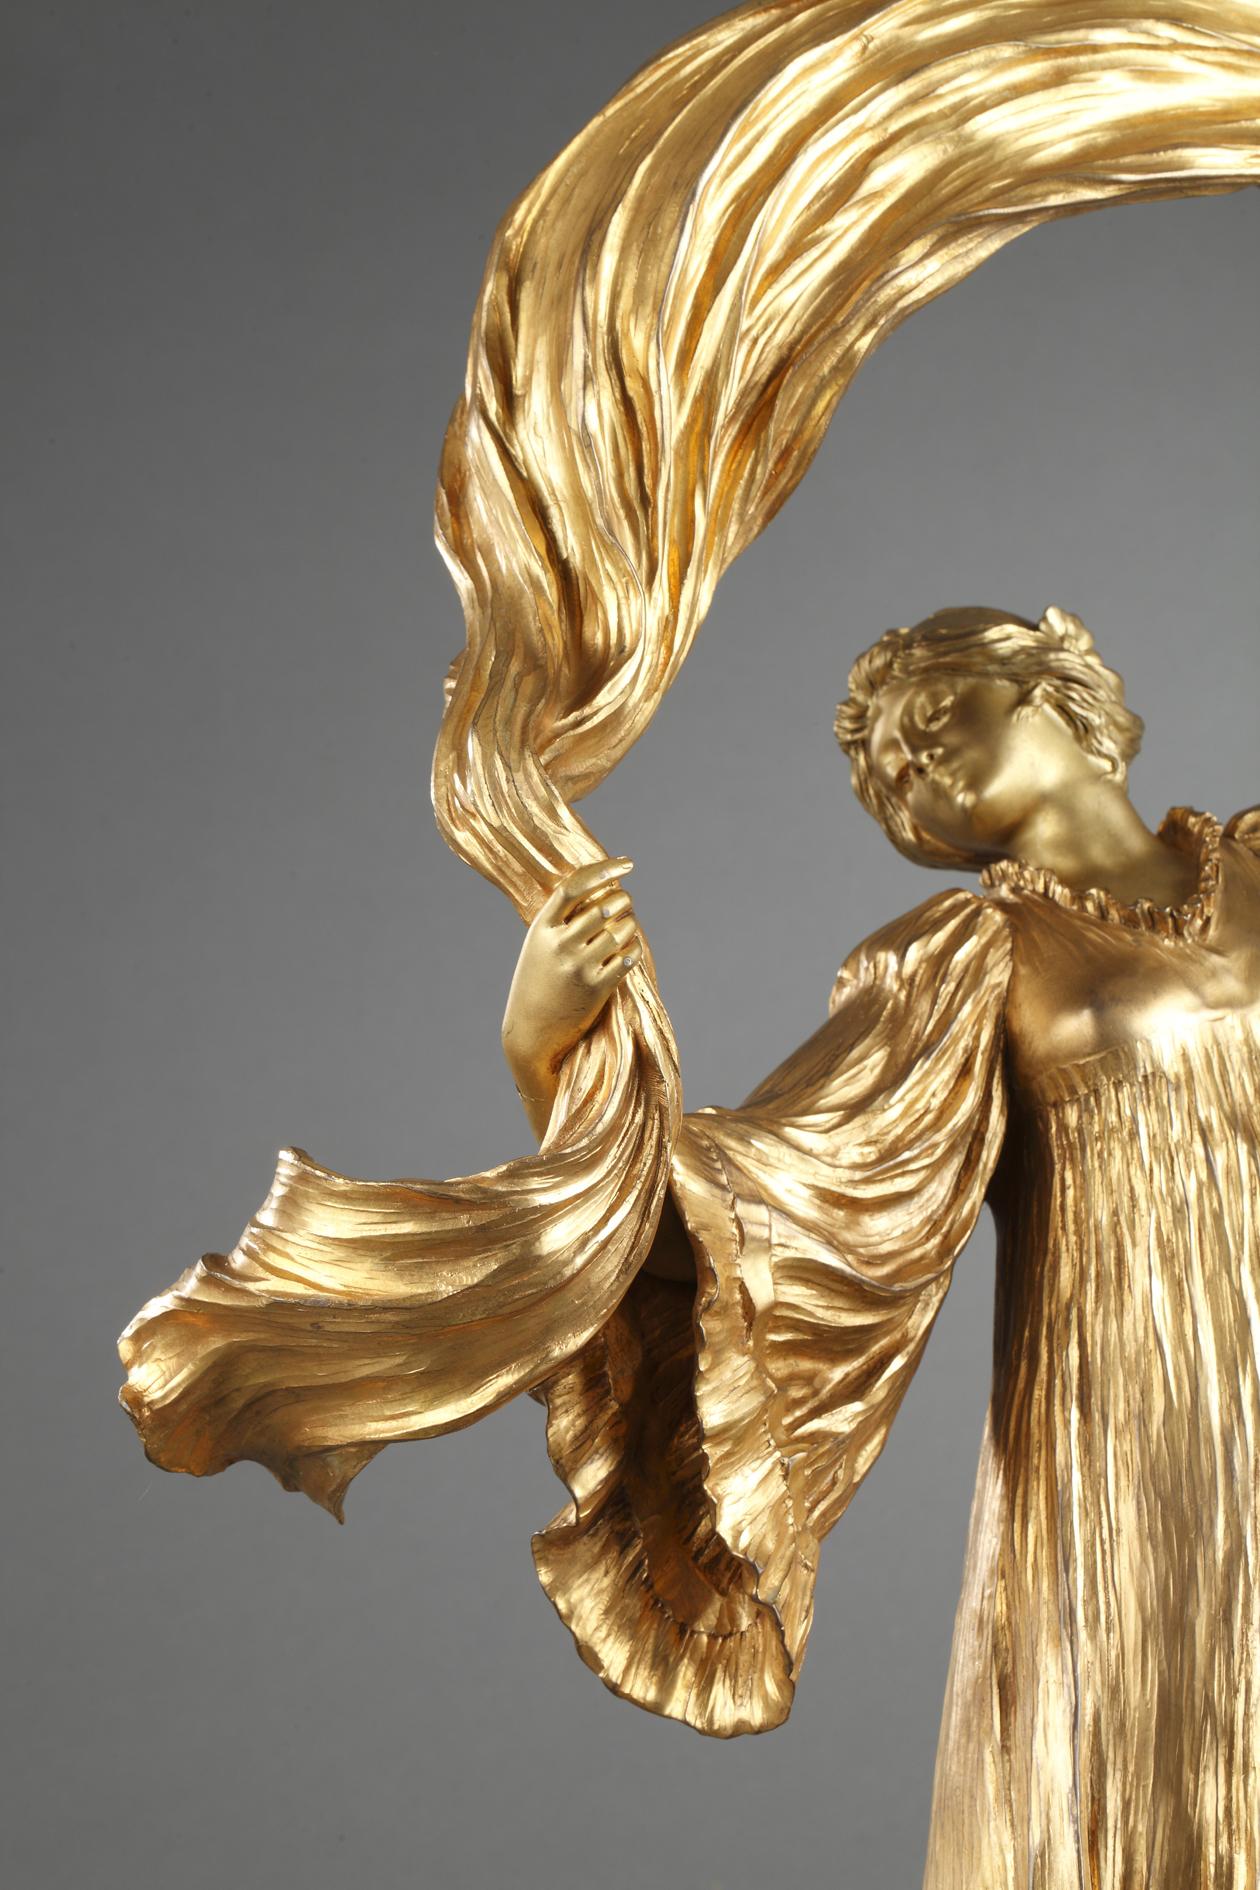 Lampe « Danseur avec l'écharpe » - Sculpture de Agathon Léonard